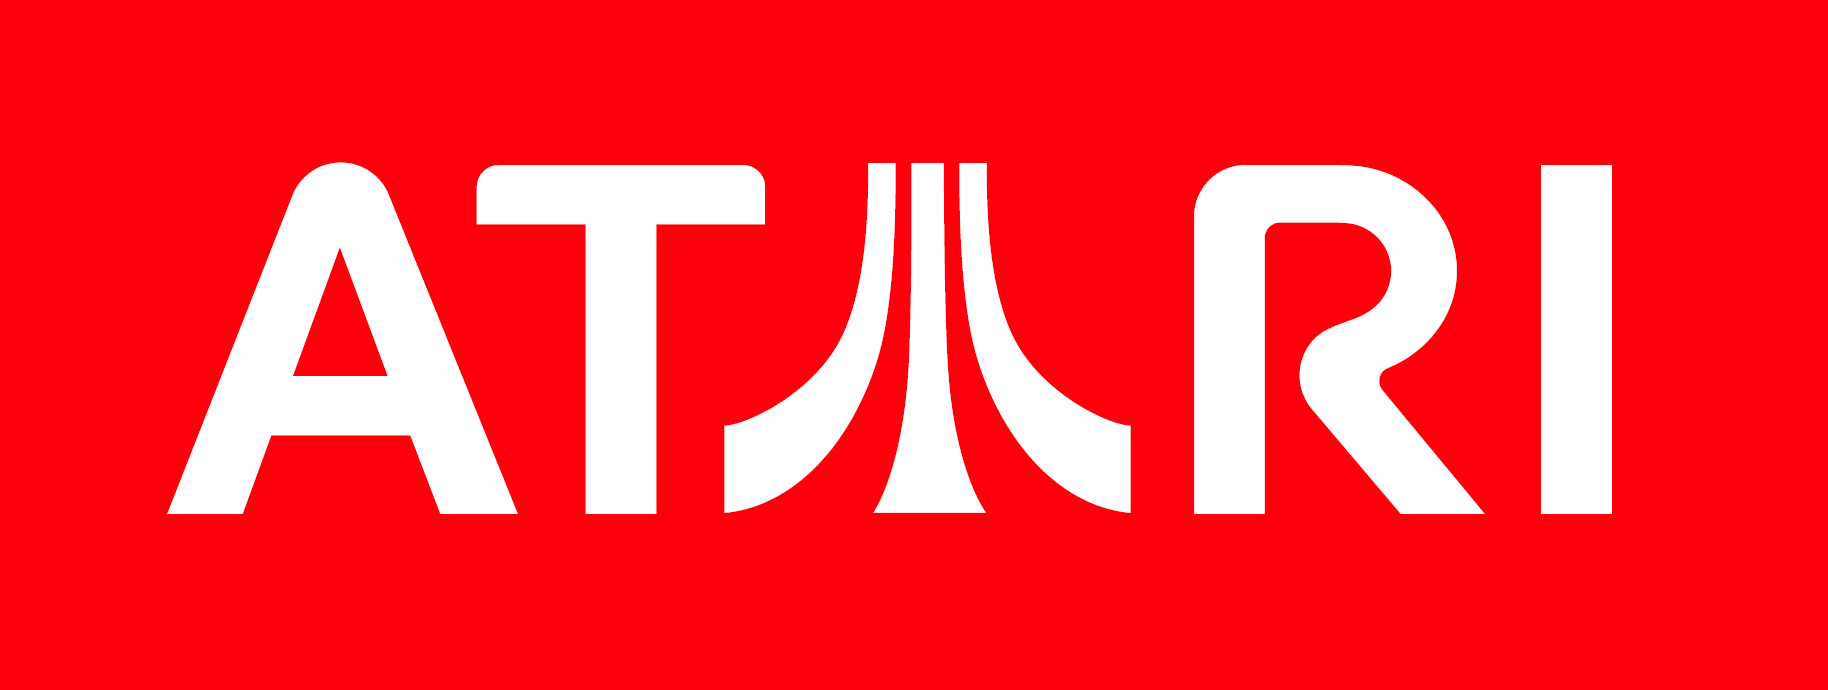 Logo Atari PNG - 35717